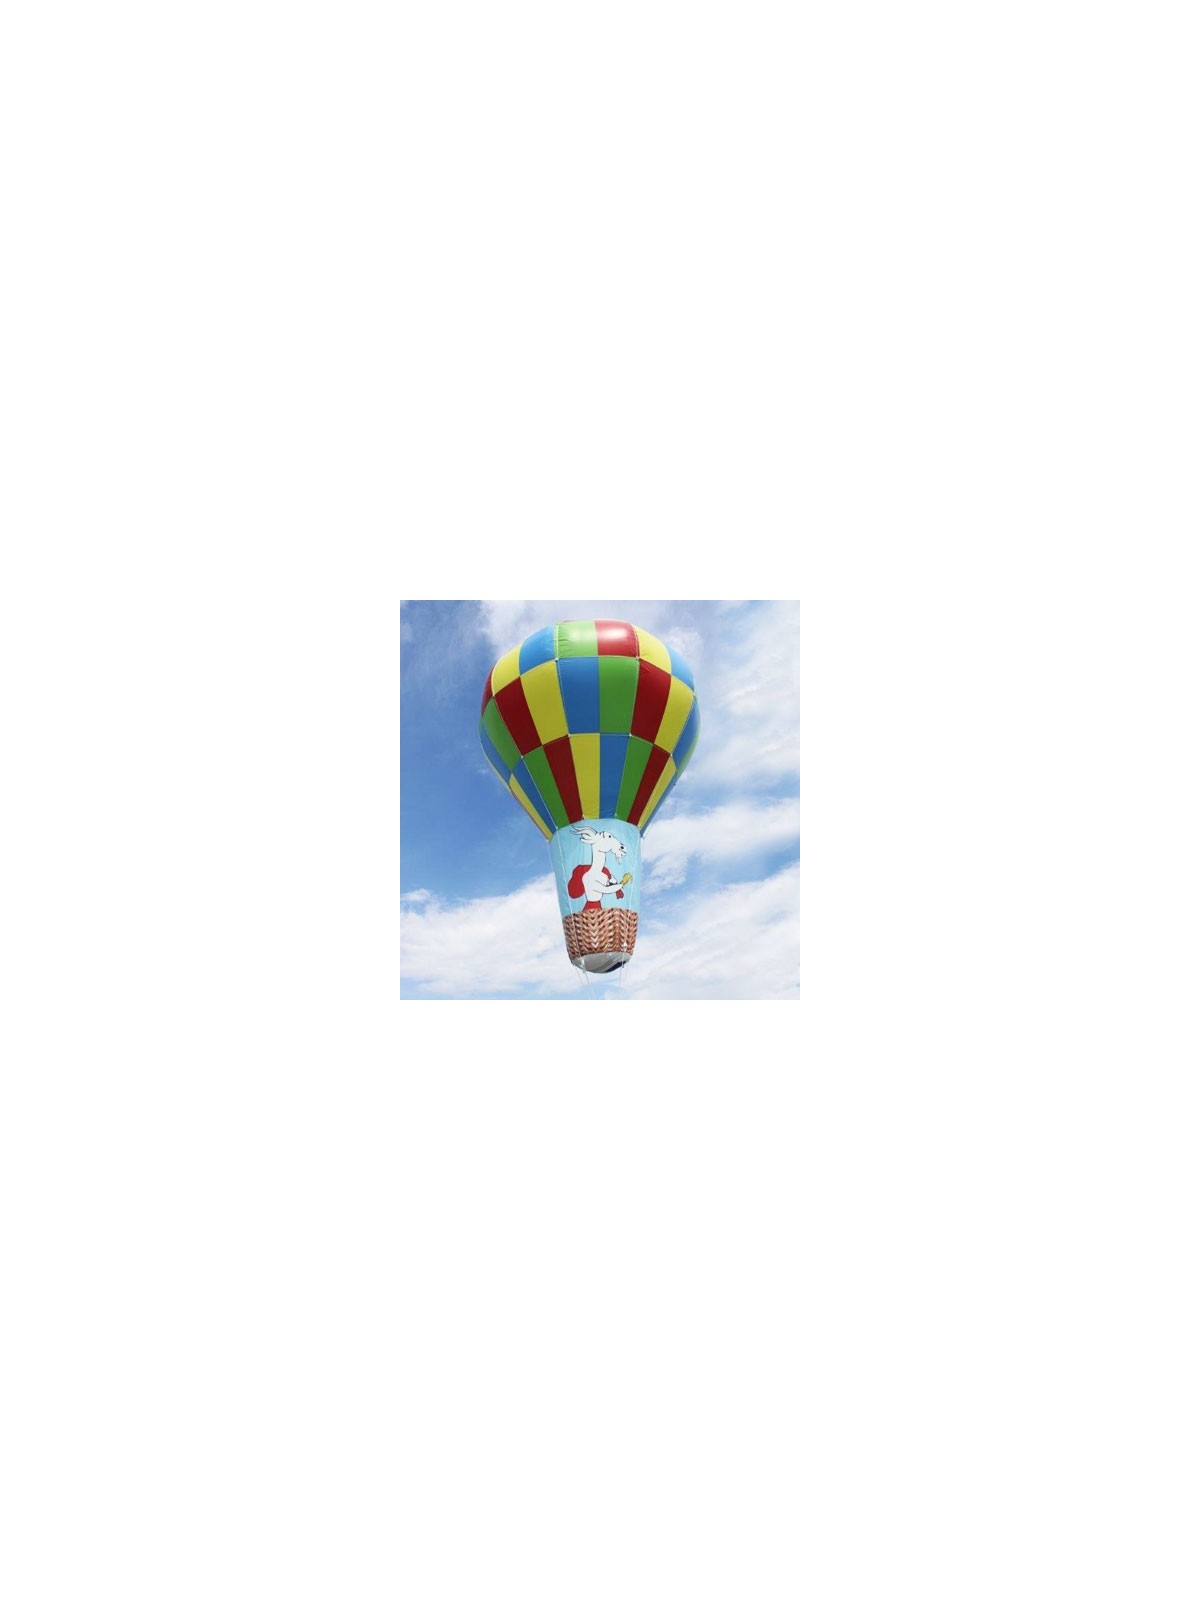 57-018 Ballon hélium sur mesure personnalisé